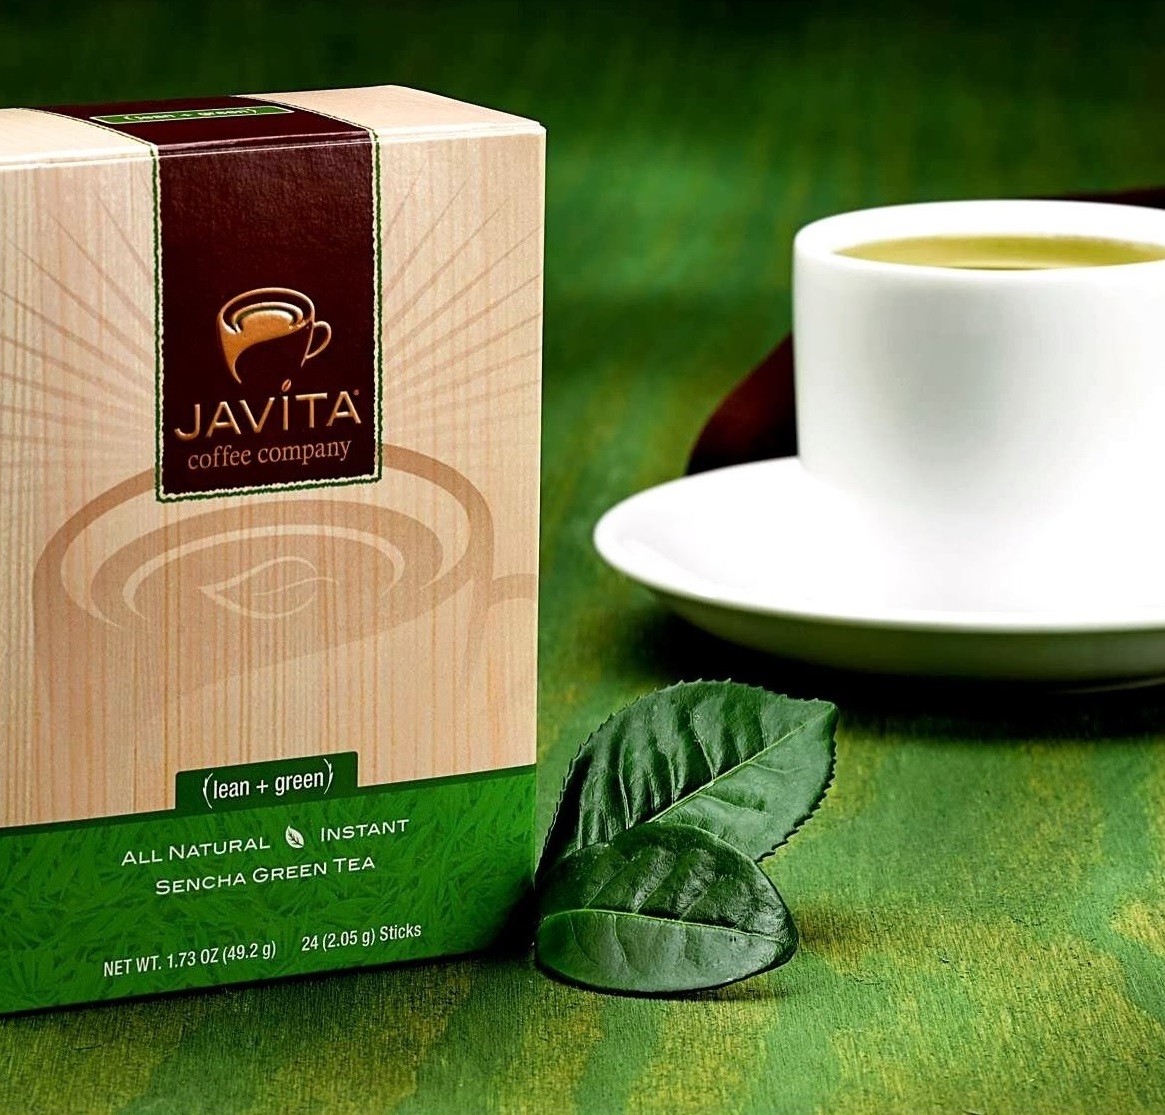 Javita lean green product